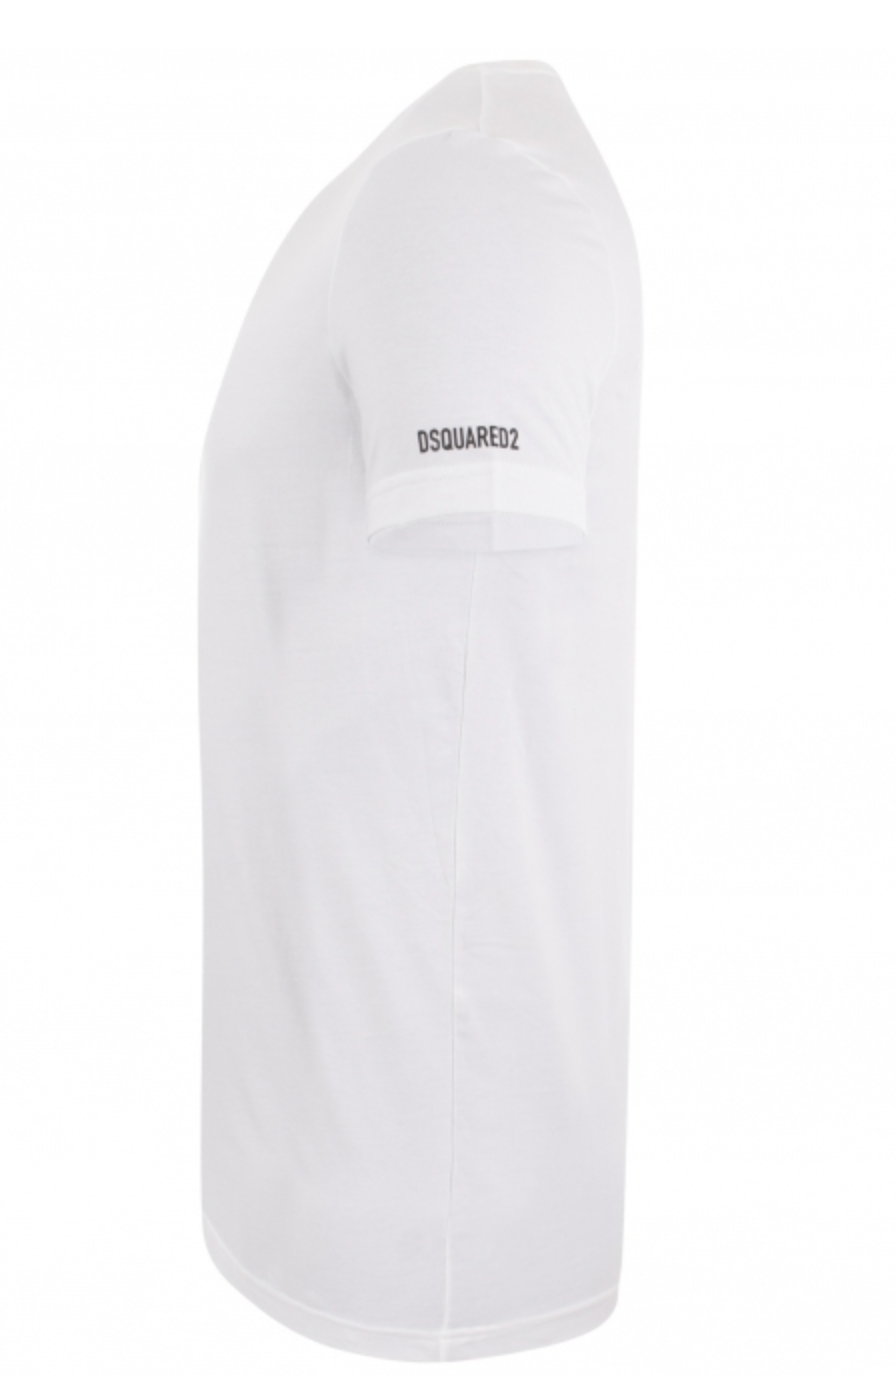 DSquared2 Short Sleeved T-Shirt White